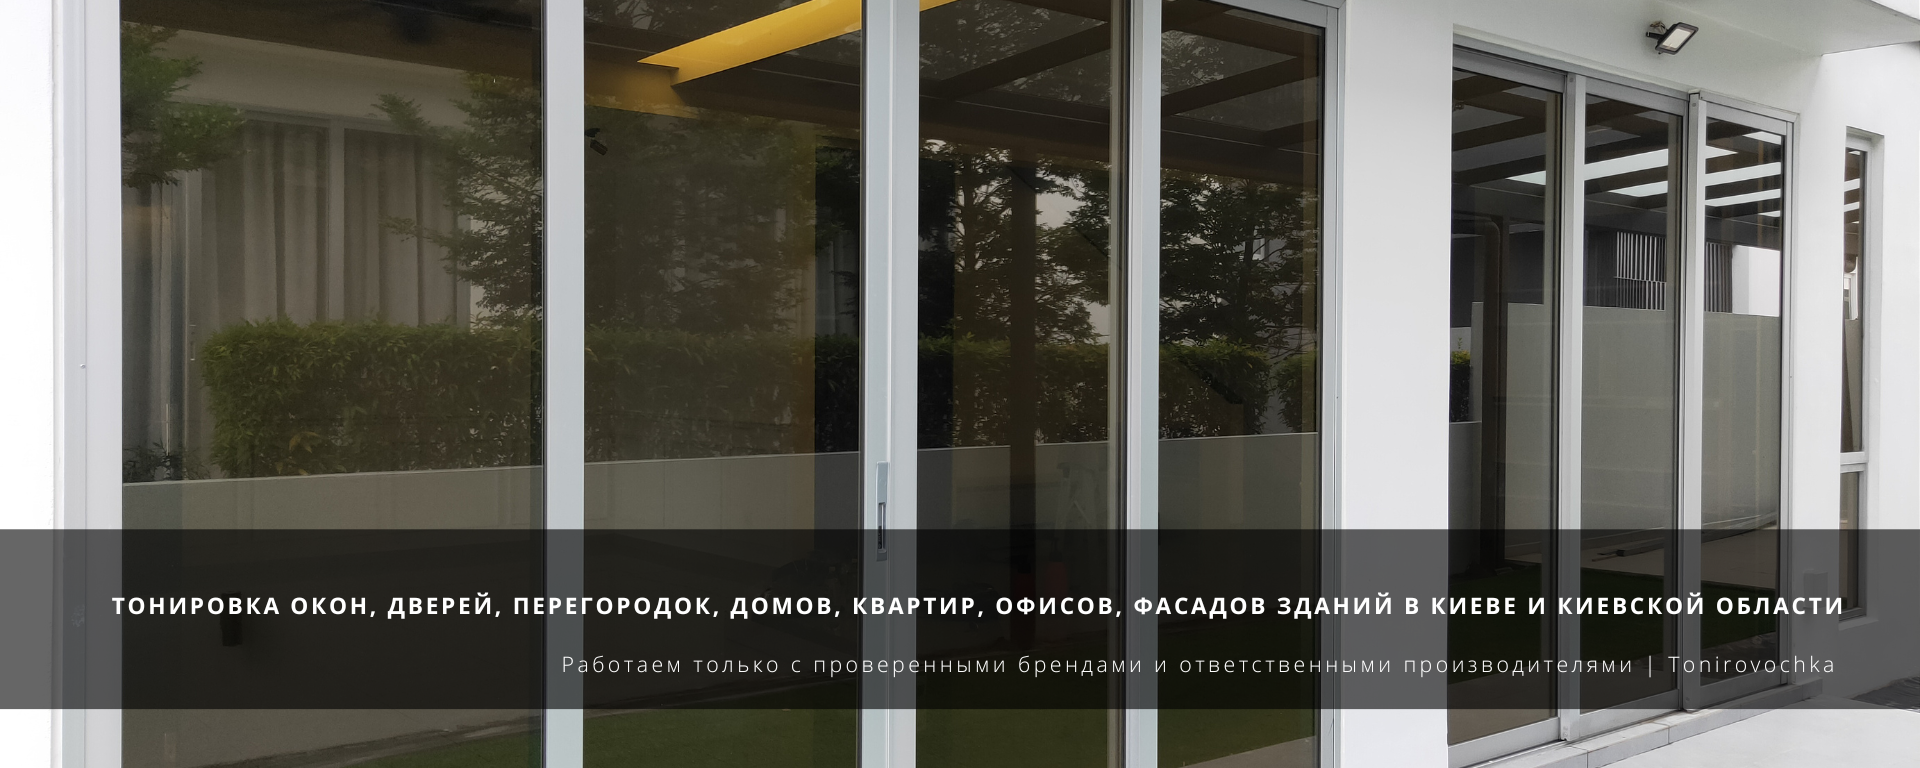 Тонировка окон, дверей, перегородок, домов, квартир, офисов, фасадов зданий в Киеве и Киевской области